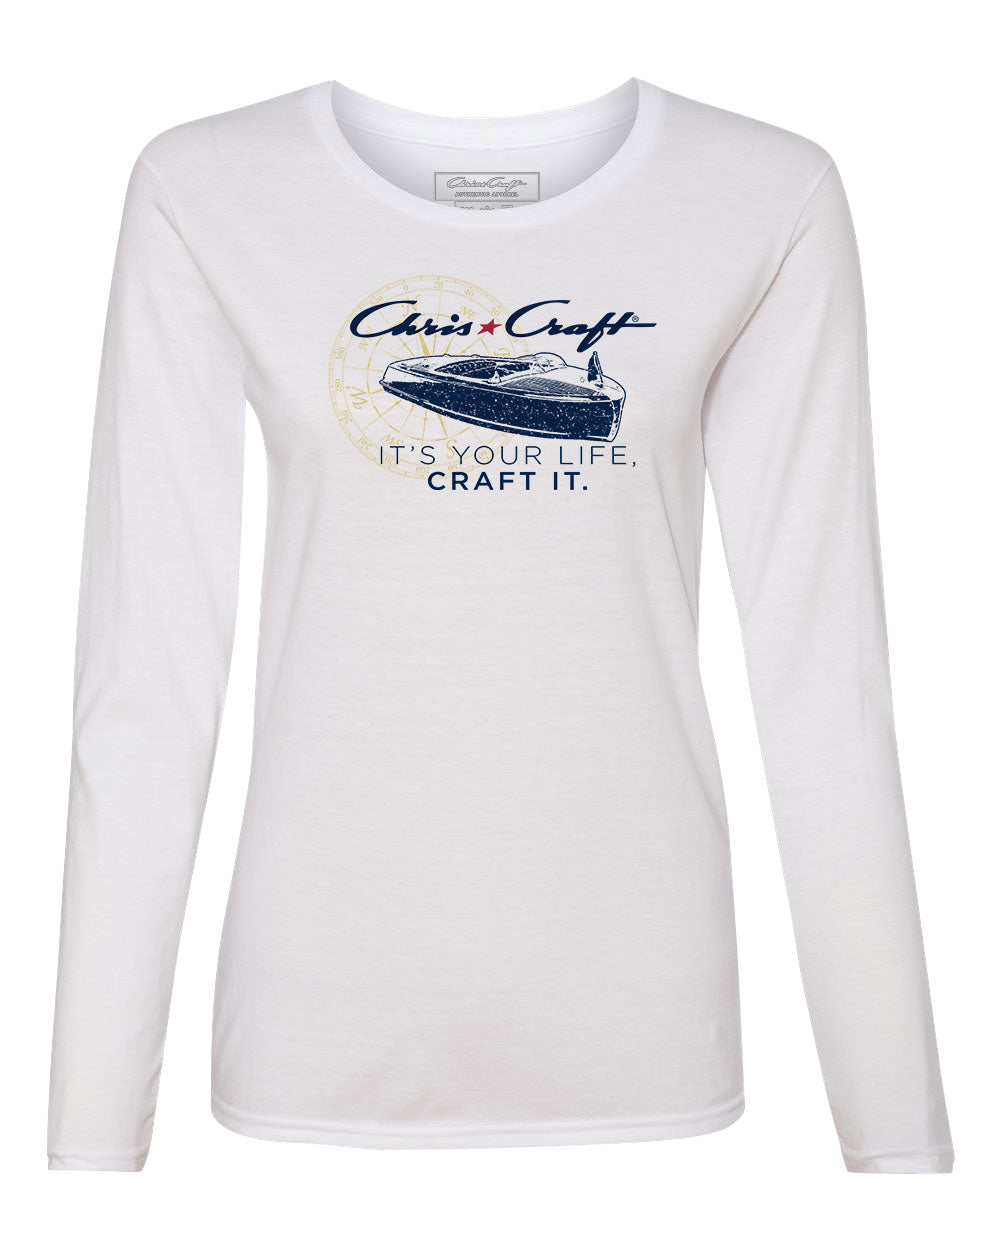 Craft It Women's Long Sleeve T-Shirt